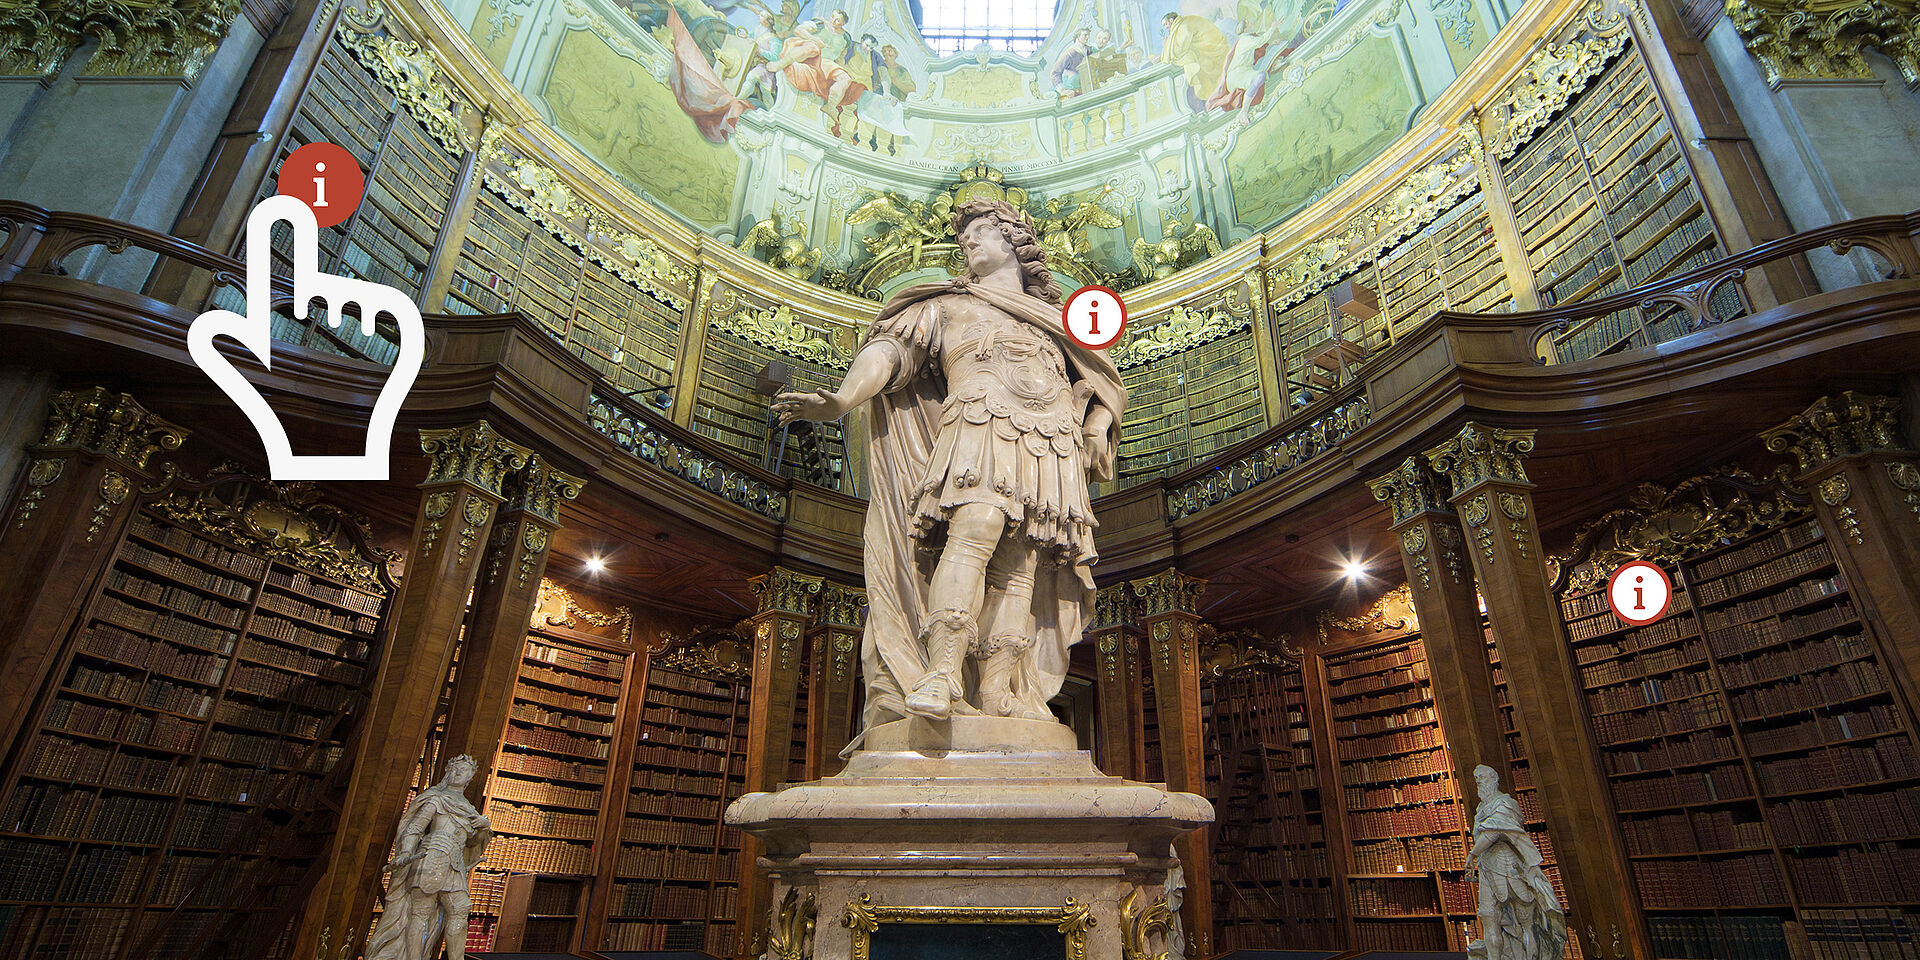 Foto von Statue in Barocksaal mit Cursor